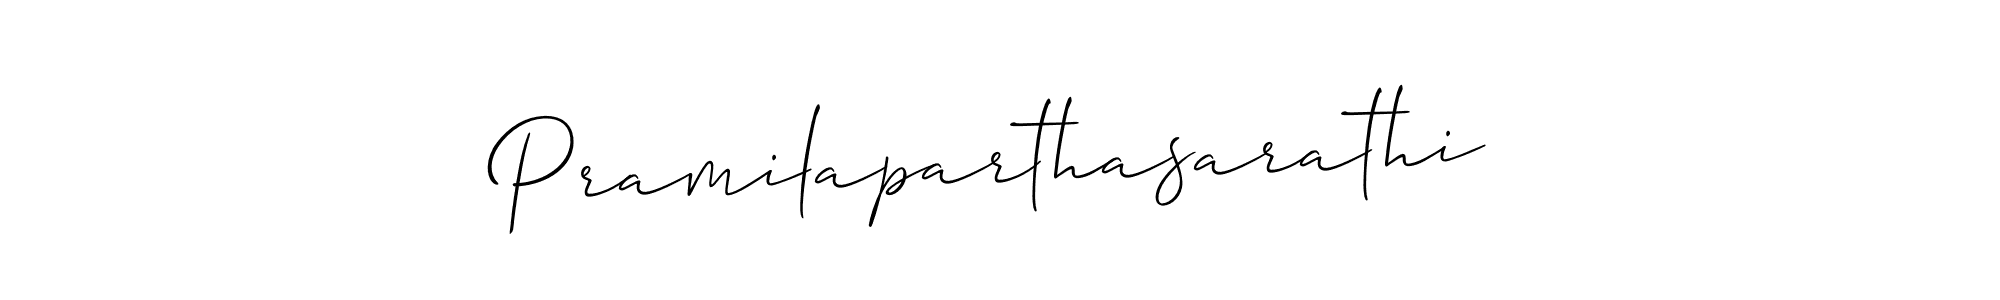 How to Draw Pramilaparthasarathi signature style? Allison_Script is a latest design signature styles for name Pramilaparthasarathi. Pramilaparthasarathi signature style 2 images and pictures png